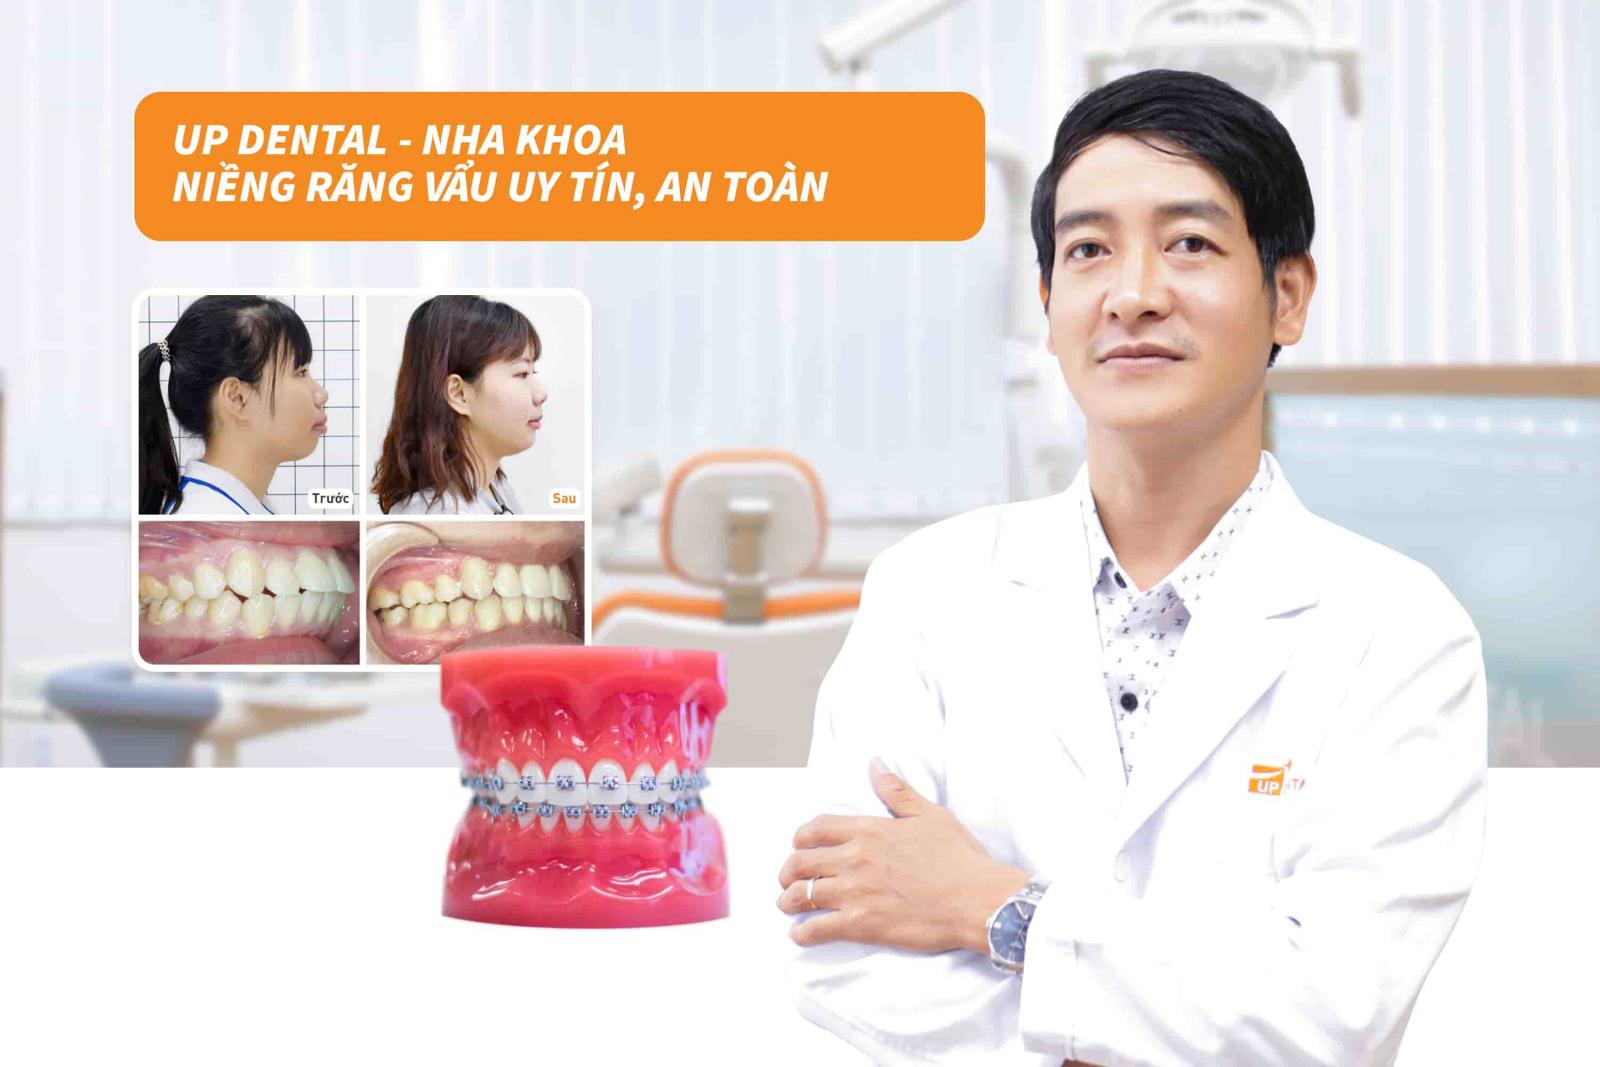 Up Dental - Nha khoa niềng răng vẩu uy tín, an toàn